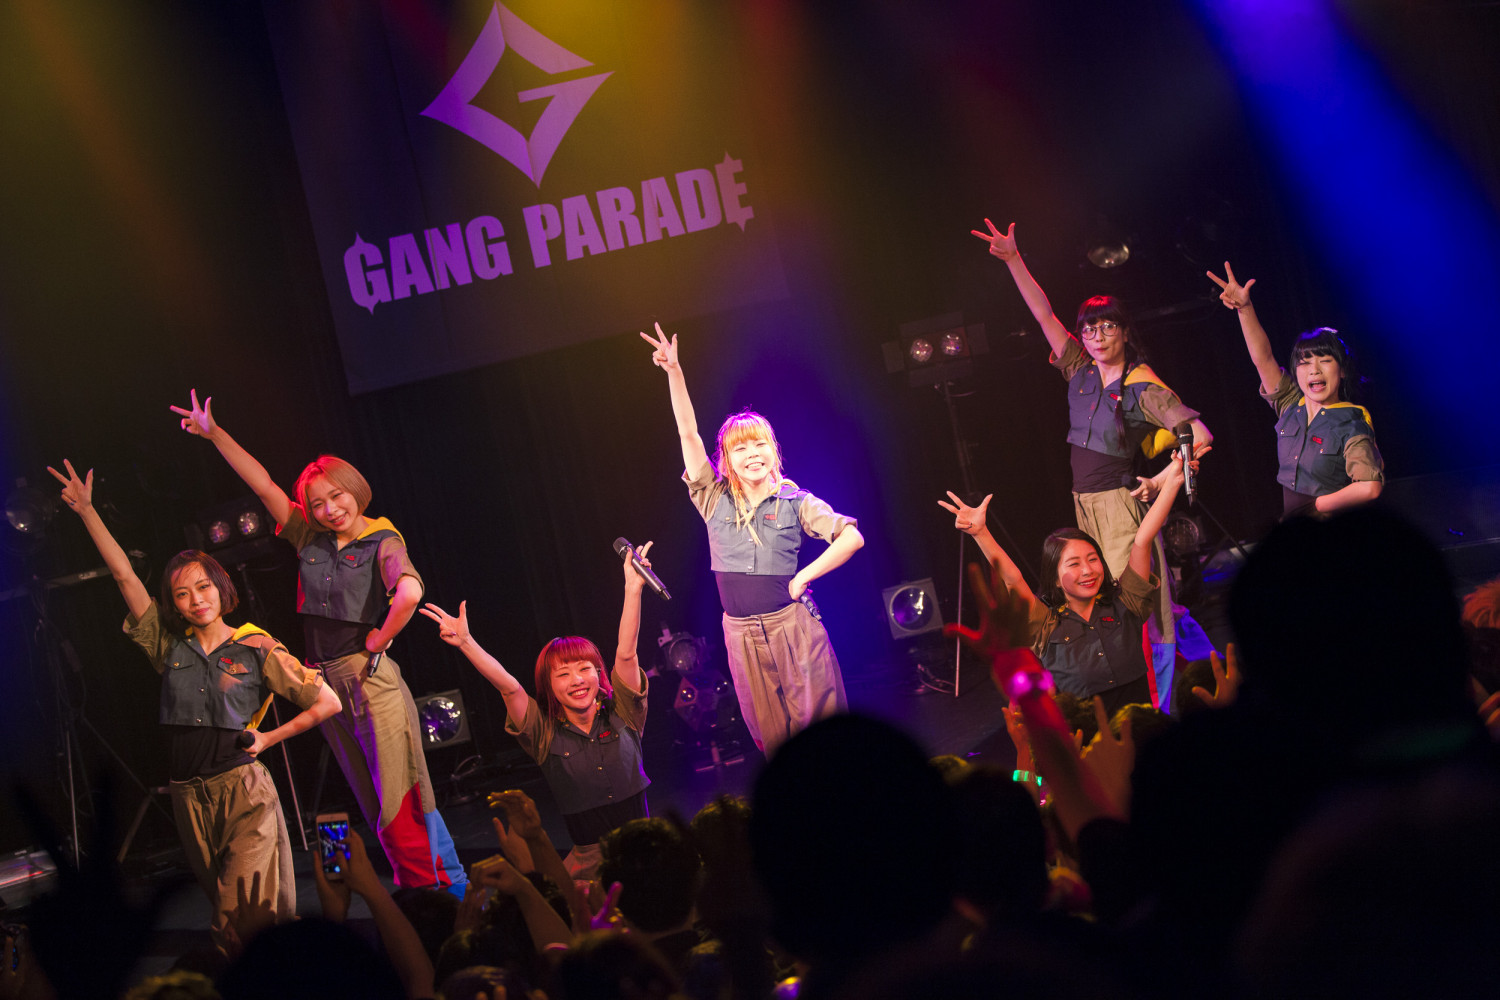 GANG PARADE Announce New Album and Ebisu LIQUIDROOM One-Man Live!